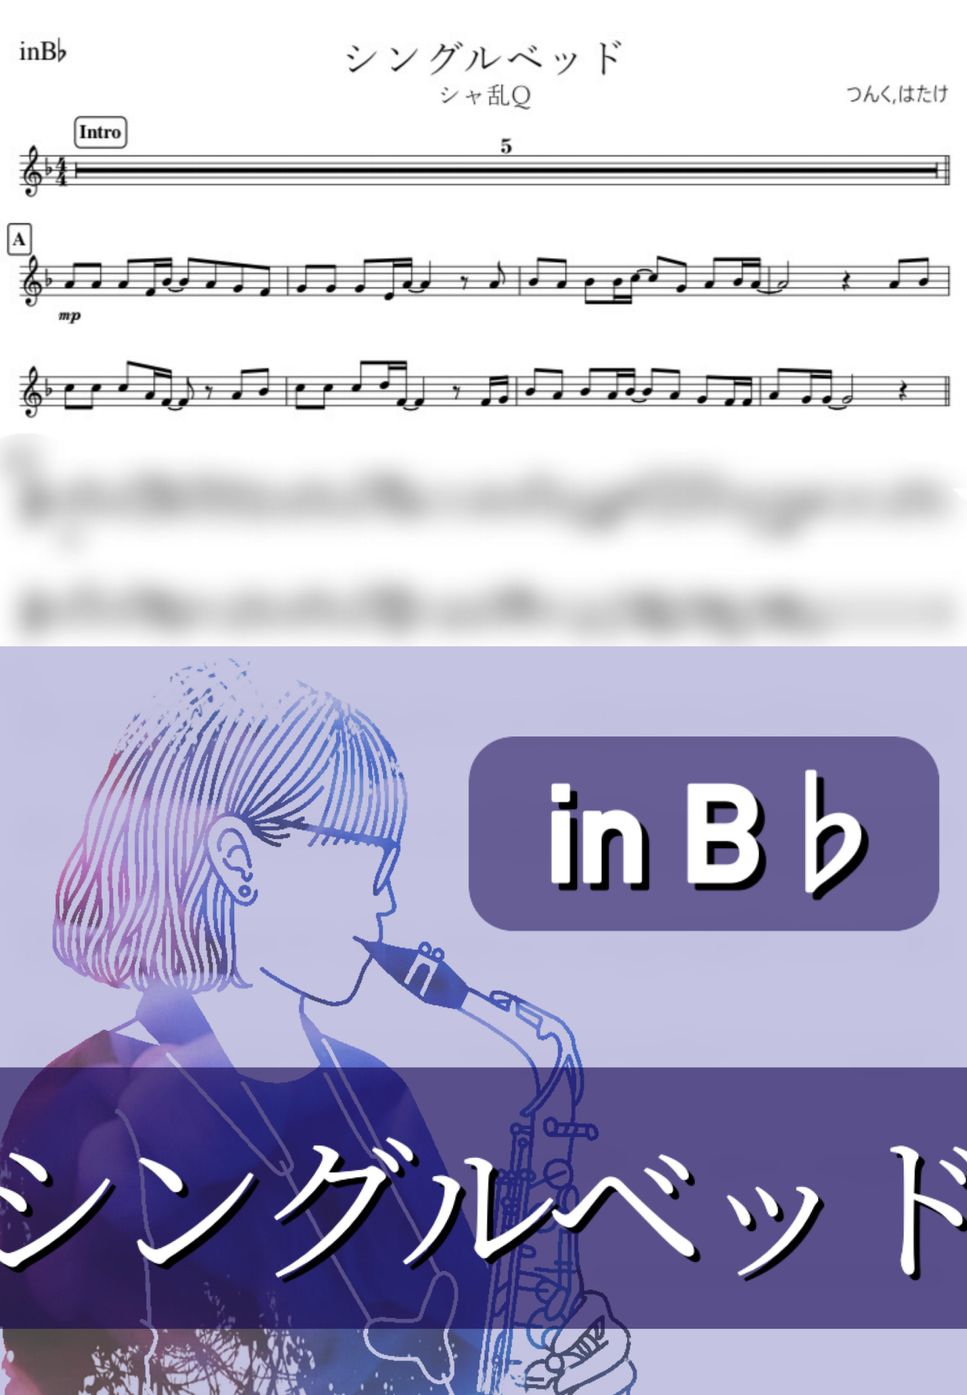 シャ乱Q - シングルベッド (B♭) by kanamusic